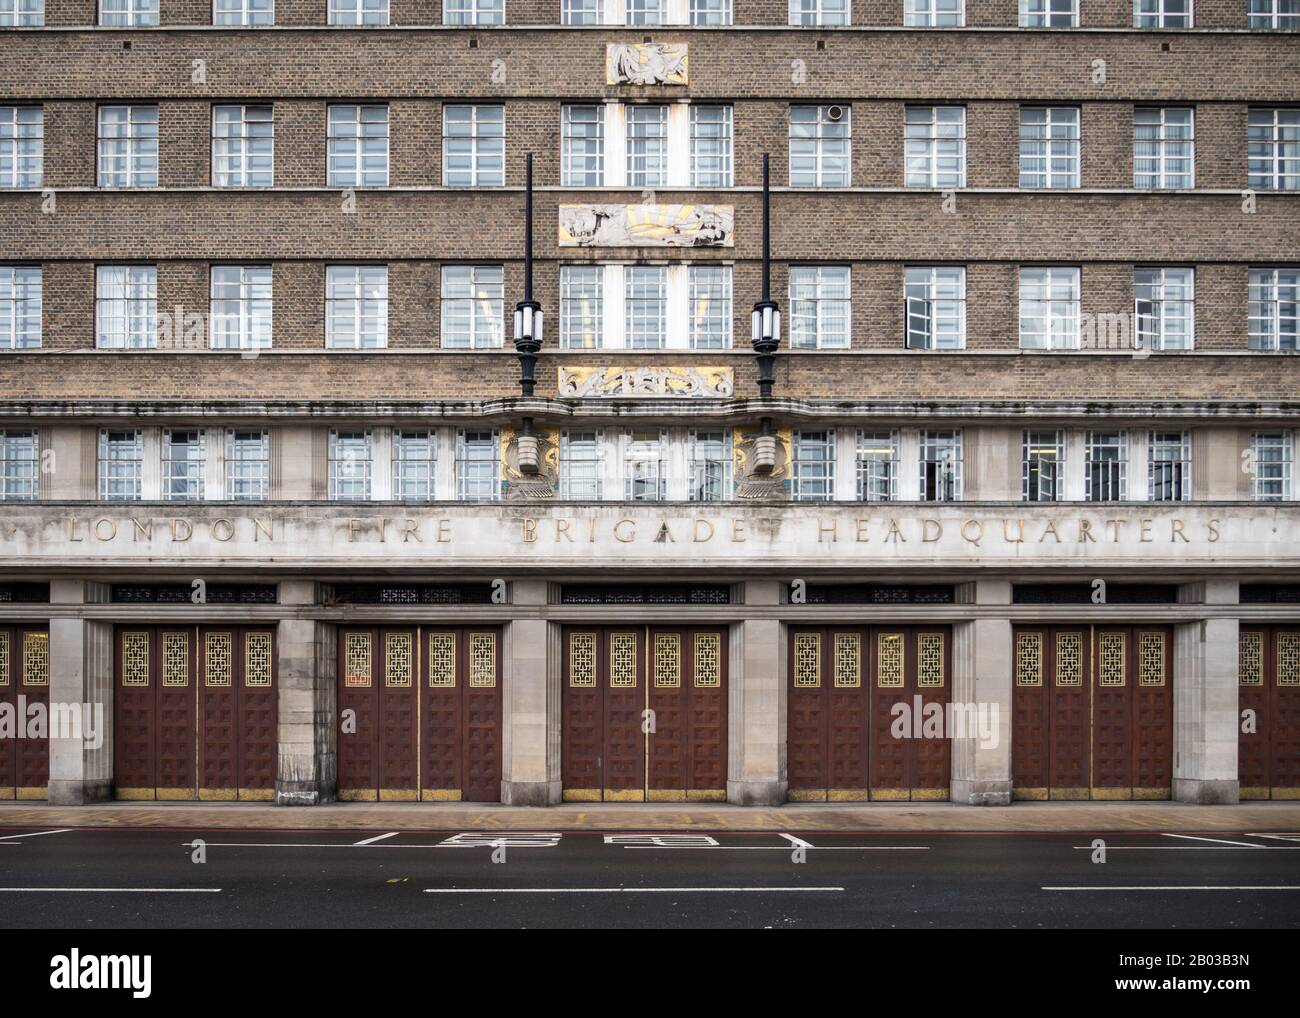 London Fire Brigade Headquarters. Die architektonische Fassade des Art Deco zum London Fire Bridge HQ auf Albert Embankment, London, Großbritannien. Stockfoto